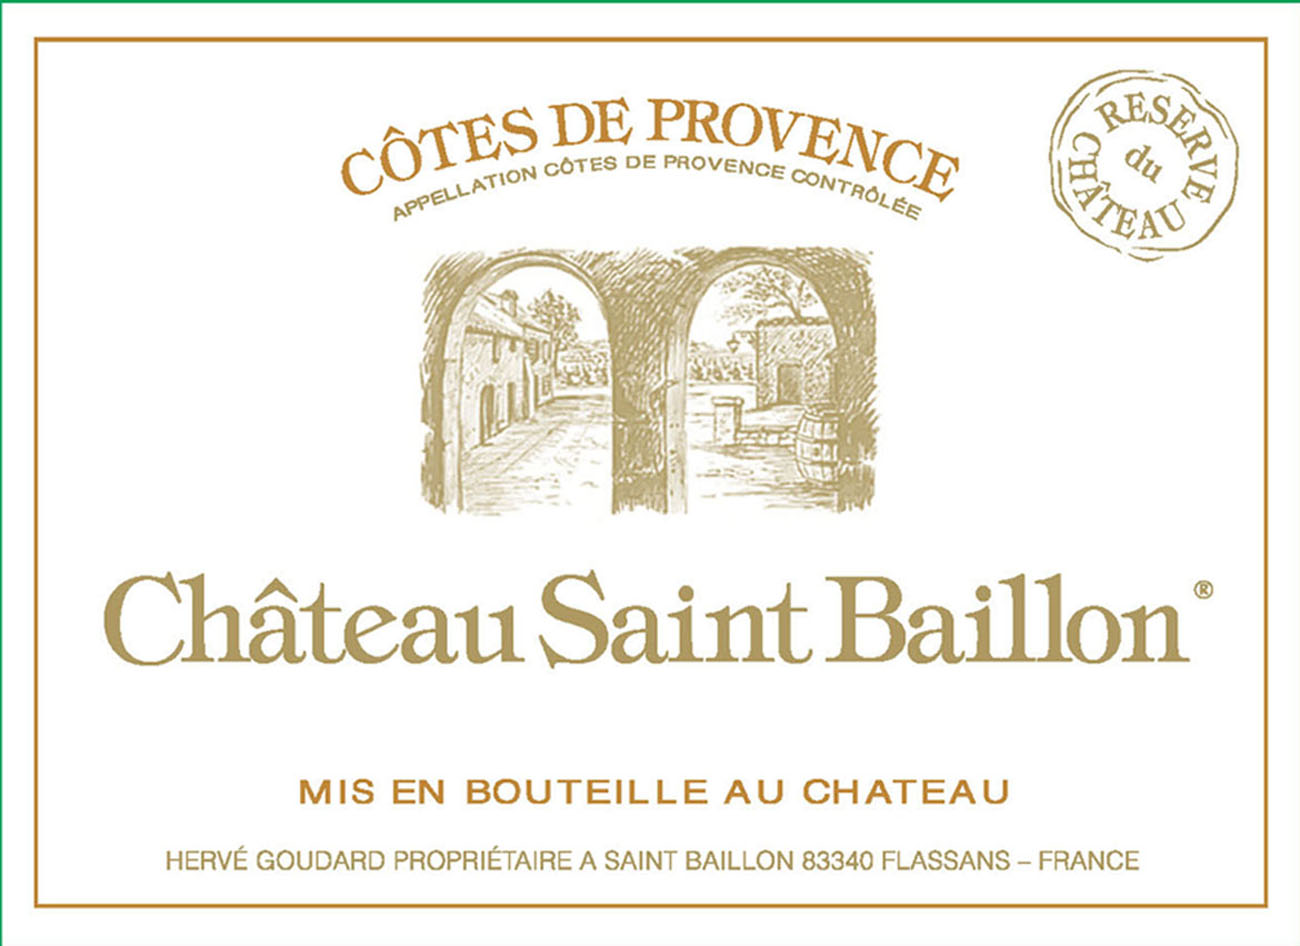 Chateau Saint Baillon label